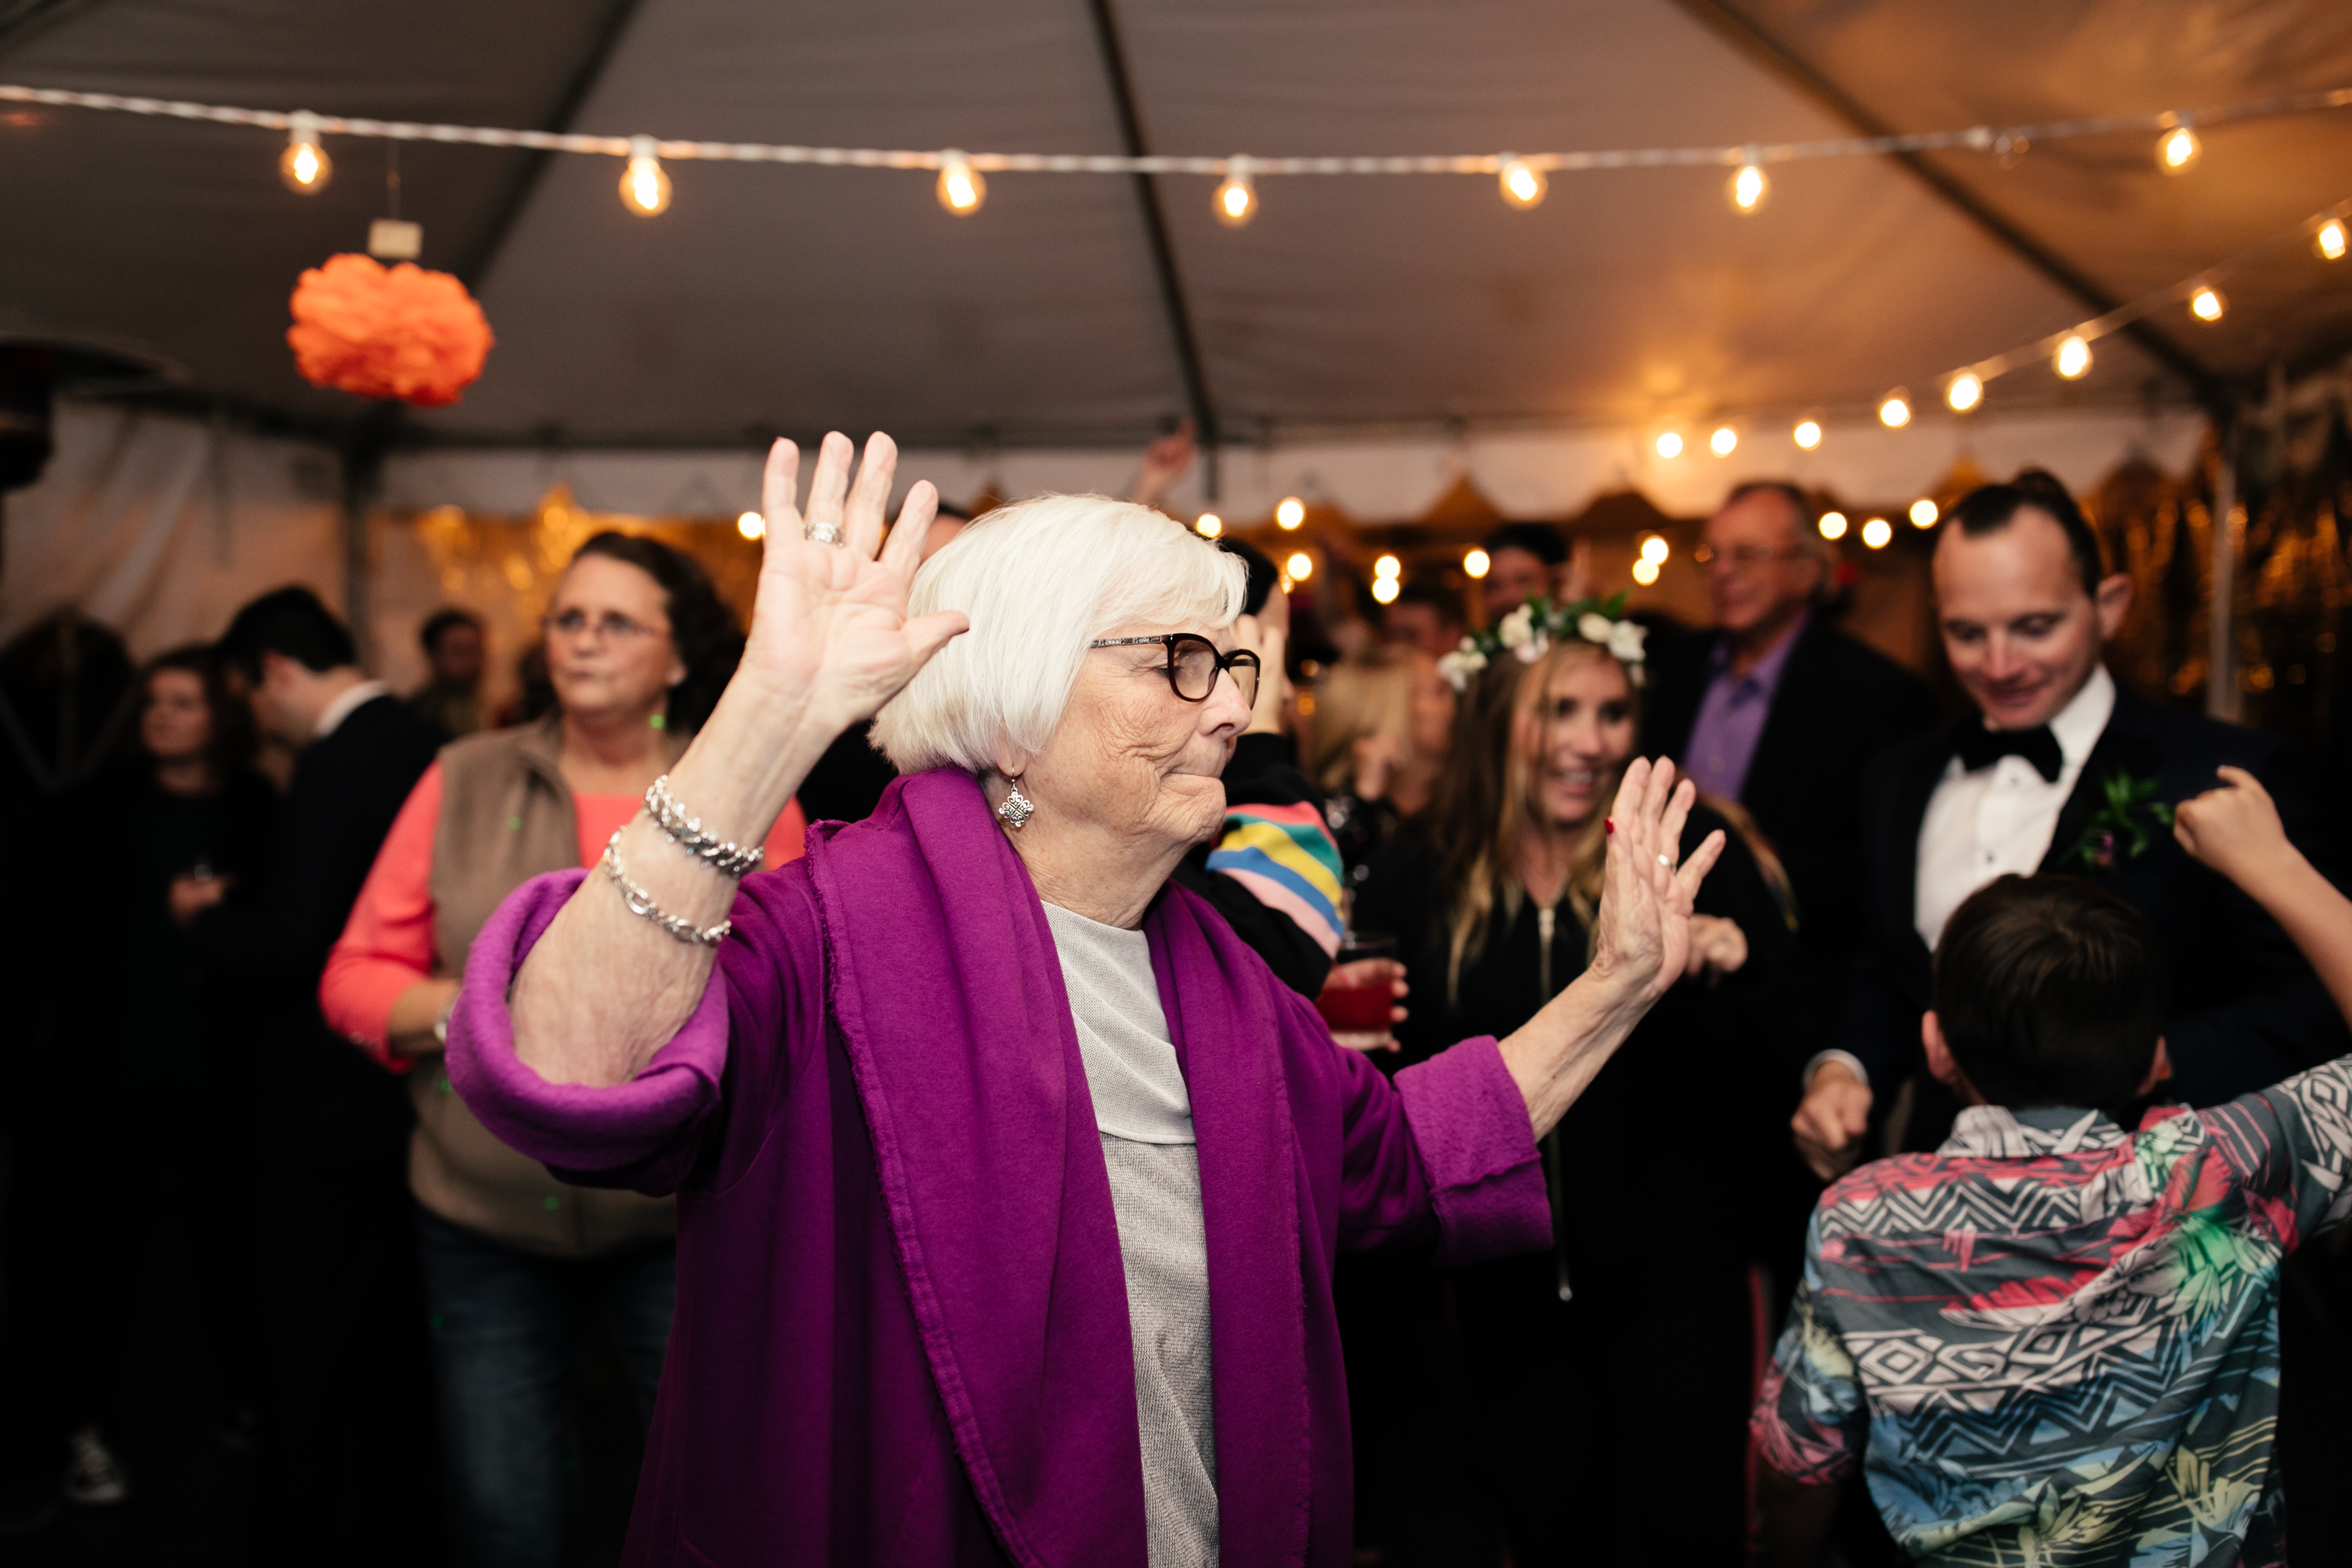 grandma dancing at wedding at sunset cliffs wedding